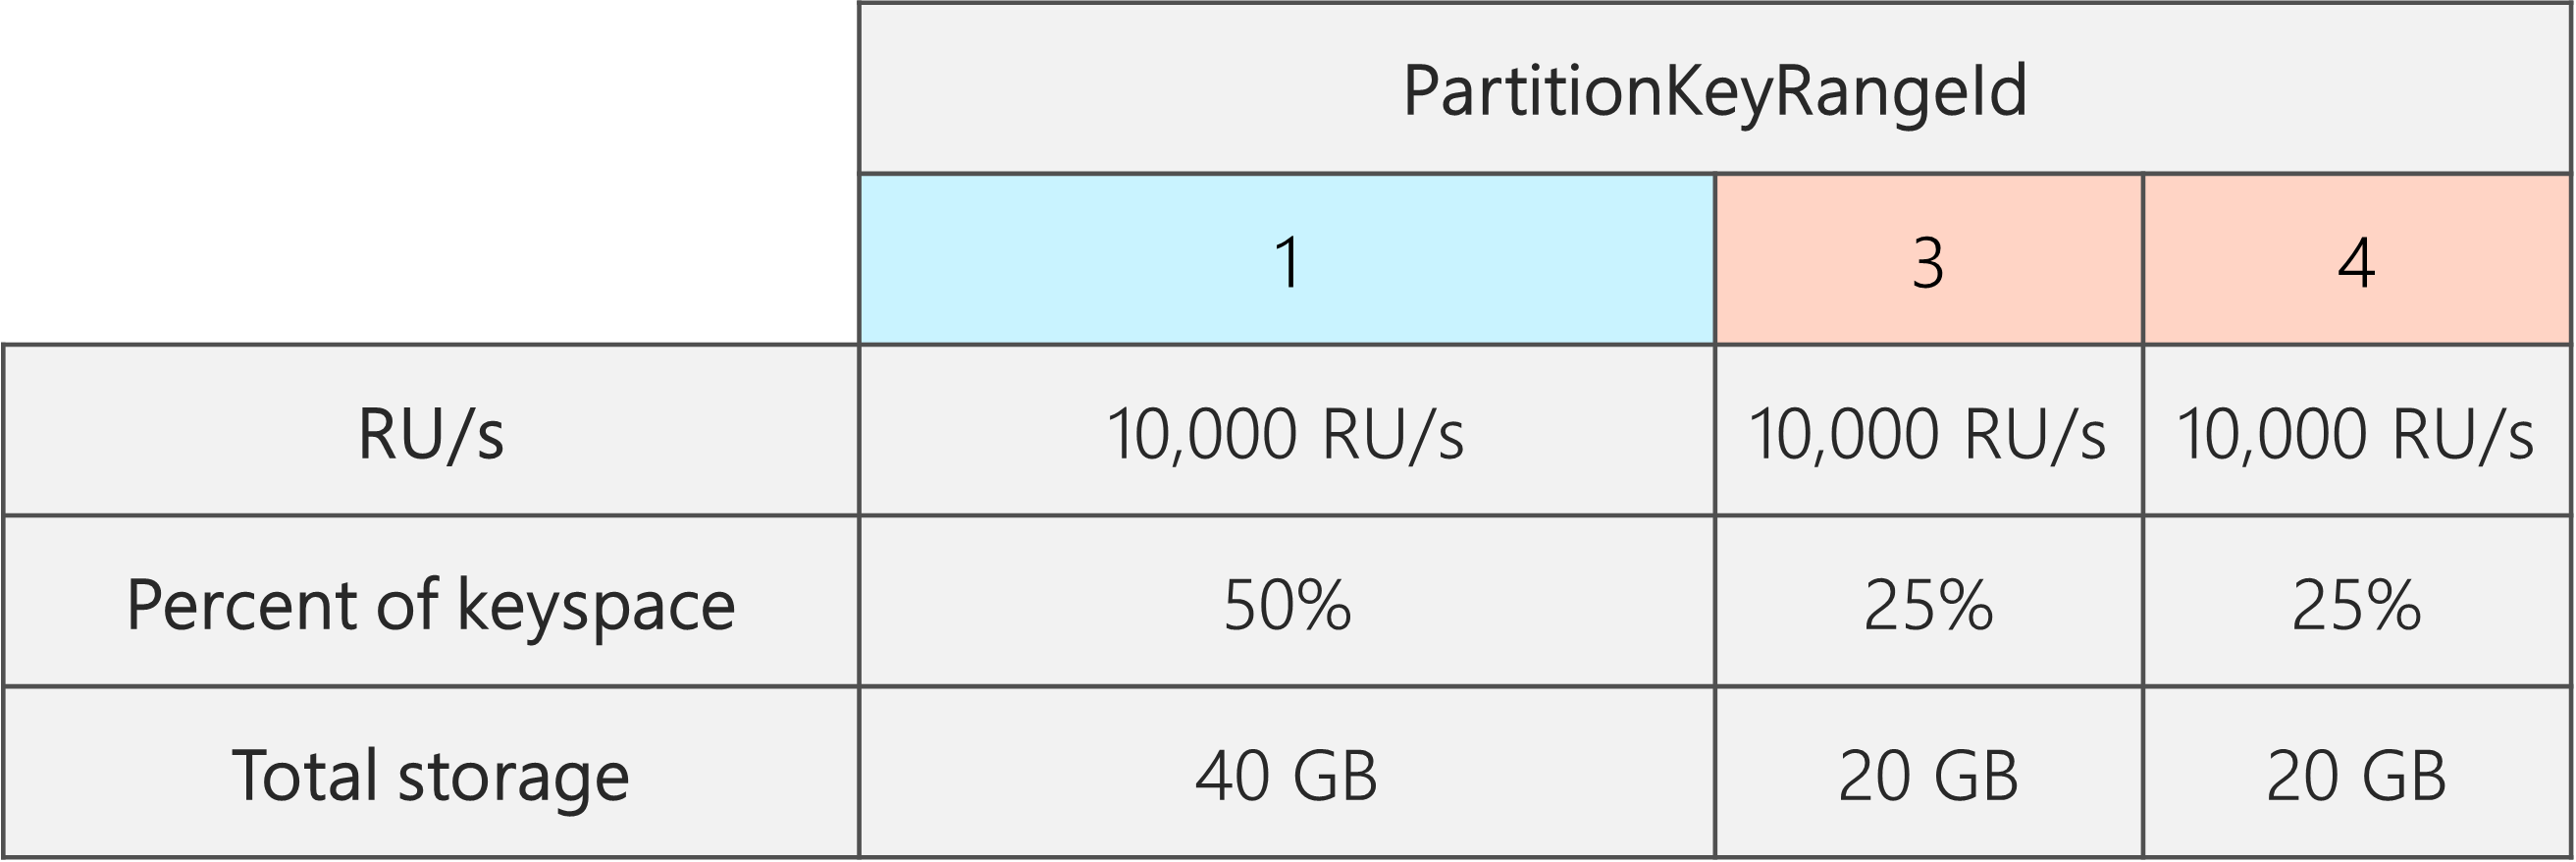 Após a divisão, existem 3 PartitionKeyRangeIds, cada um com 10.000 RU/s. No entanto, um dos PartitionKeyRangeIds tem 50% do espaço total de chaves (40 GB), enquanto dois dos PartitionKeyRangeIds têm 25% do espaço total de chaves (20 GB)